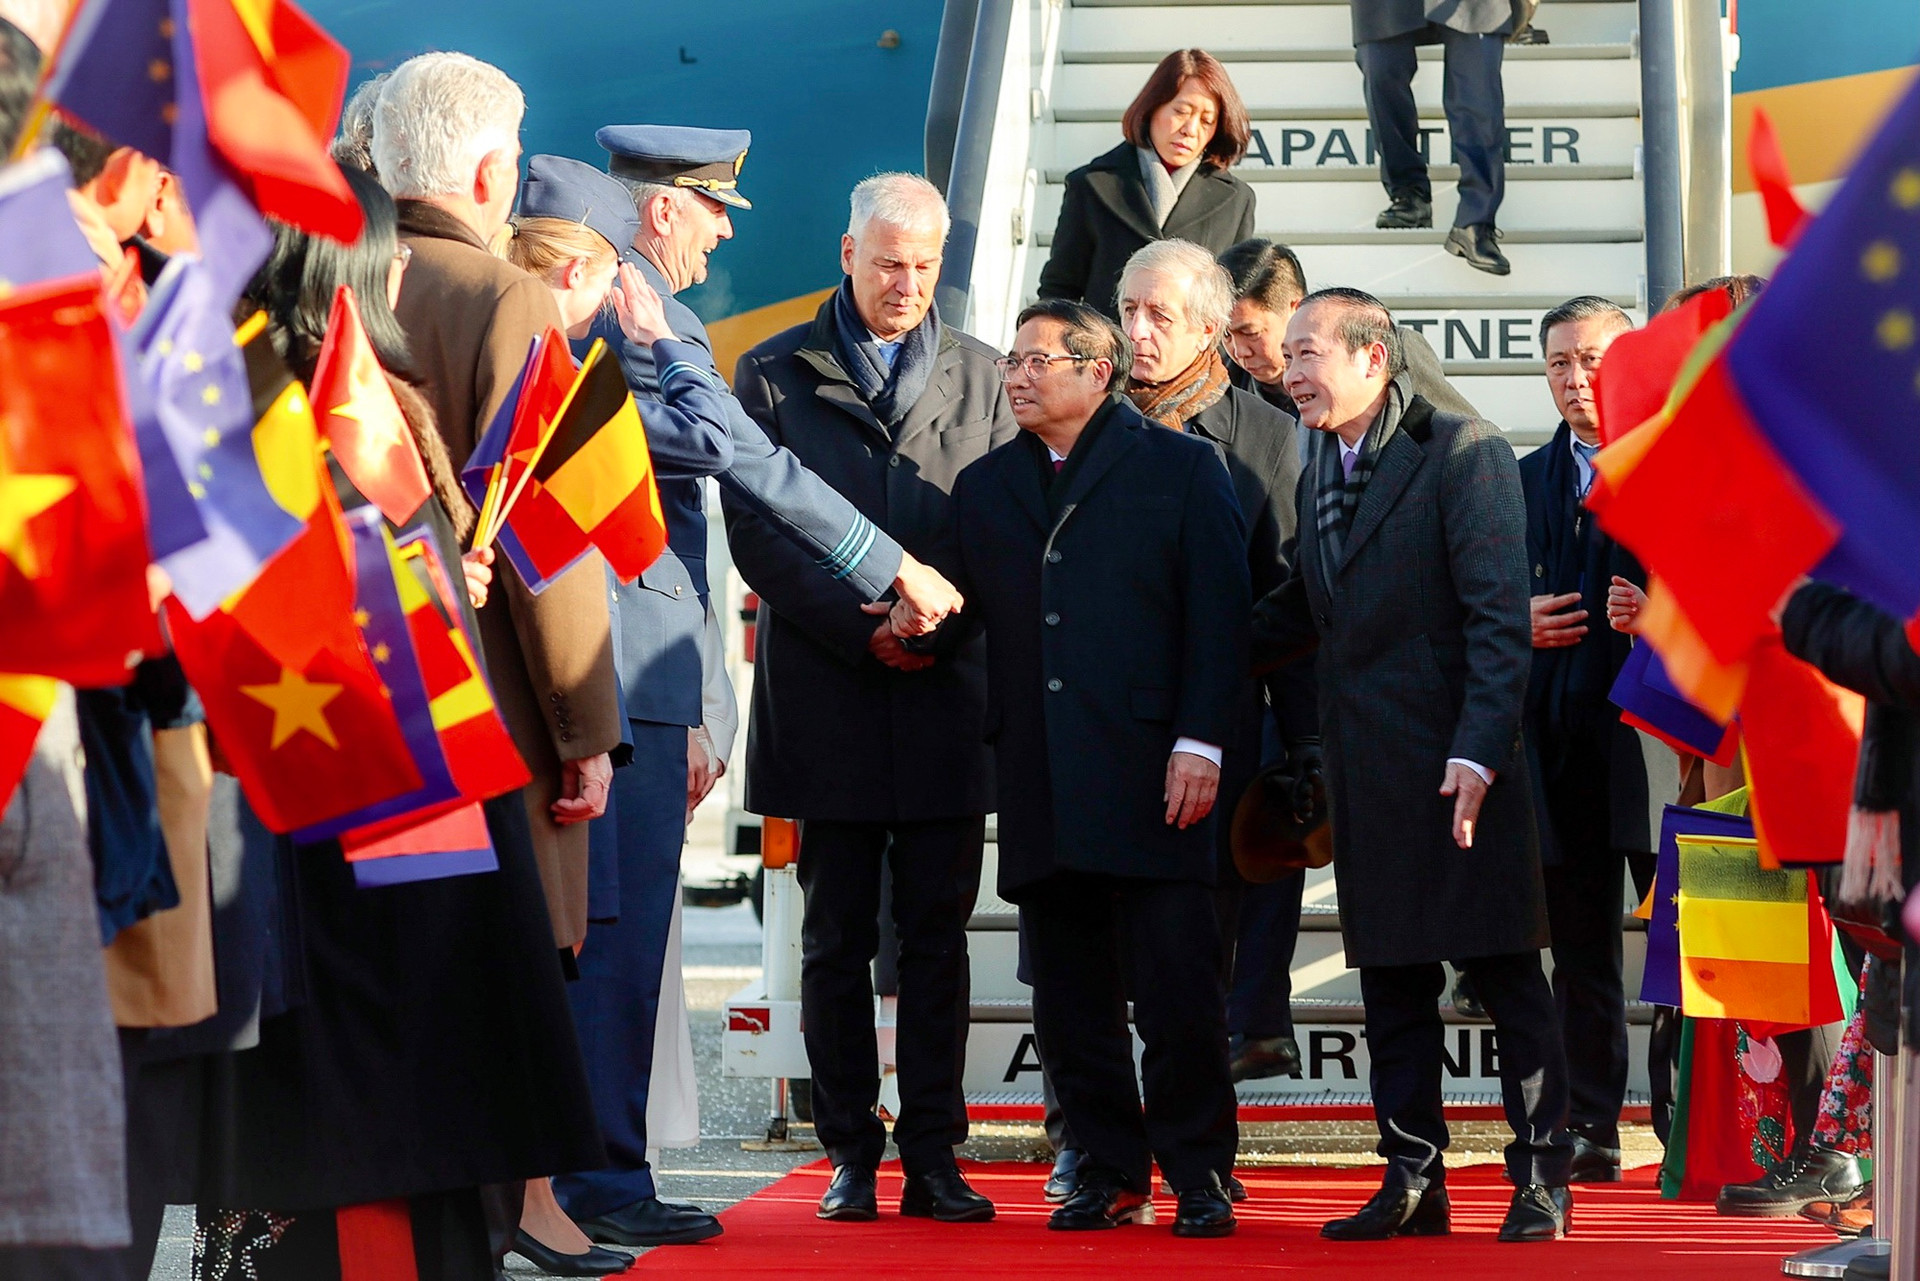 Thủ tướng bắt đầu chuyến thăm chính thức Vương quốc Bỉ và tham dự Hội nghị cấp cao ASEAN-EU - Ảnh 4.